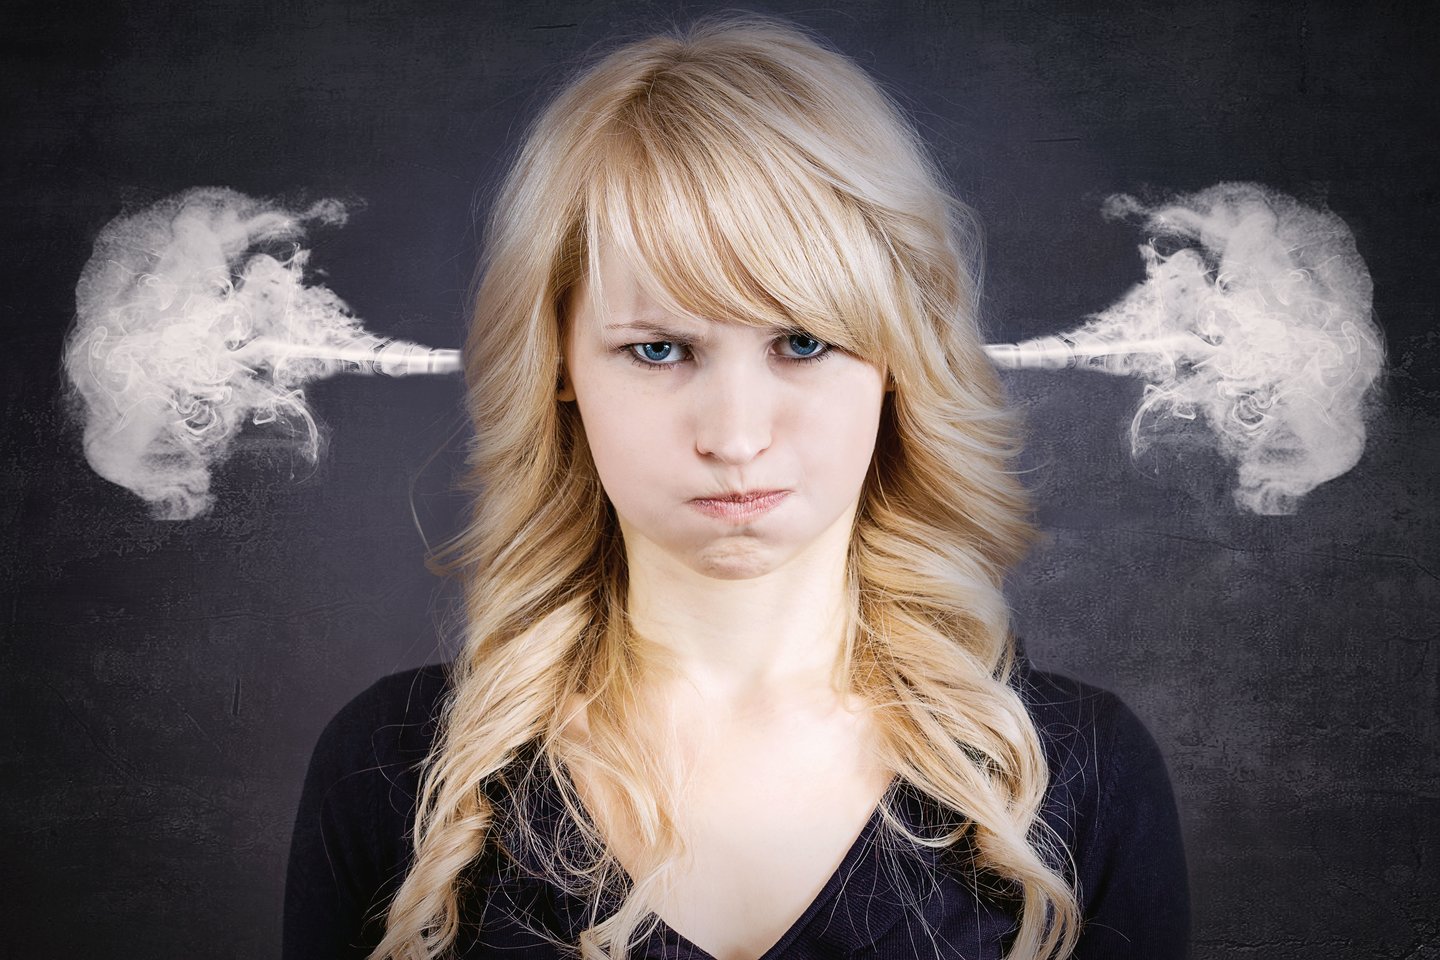  Pykčio užvaldytos smegenys gali trukdyti dirbti, nuolat kelti įtampą bendraujant ir netgi žaloti jūsų sveikatą.<br> 123rf nuotr.